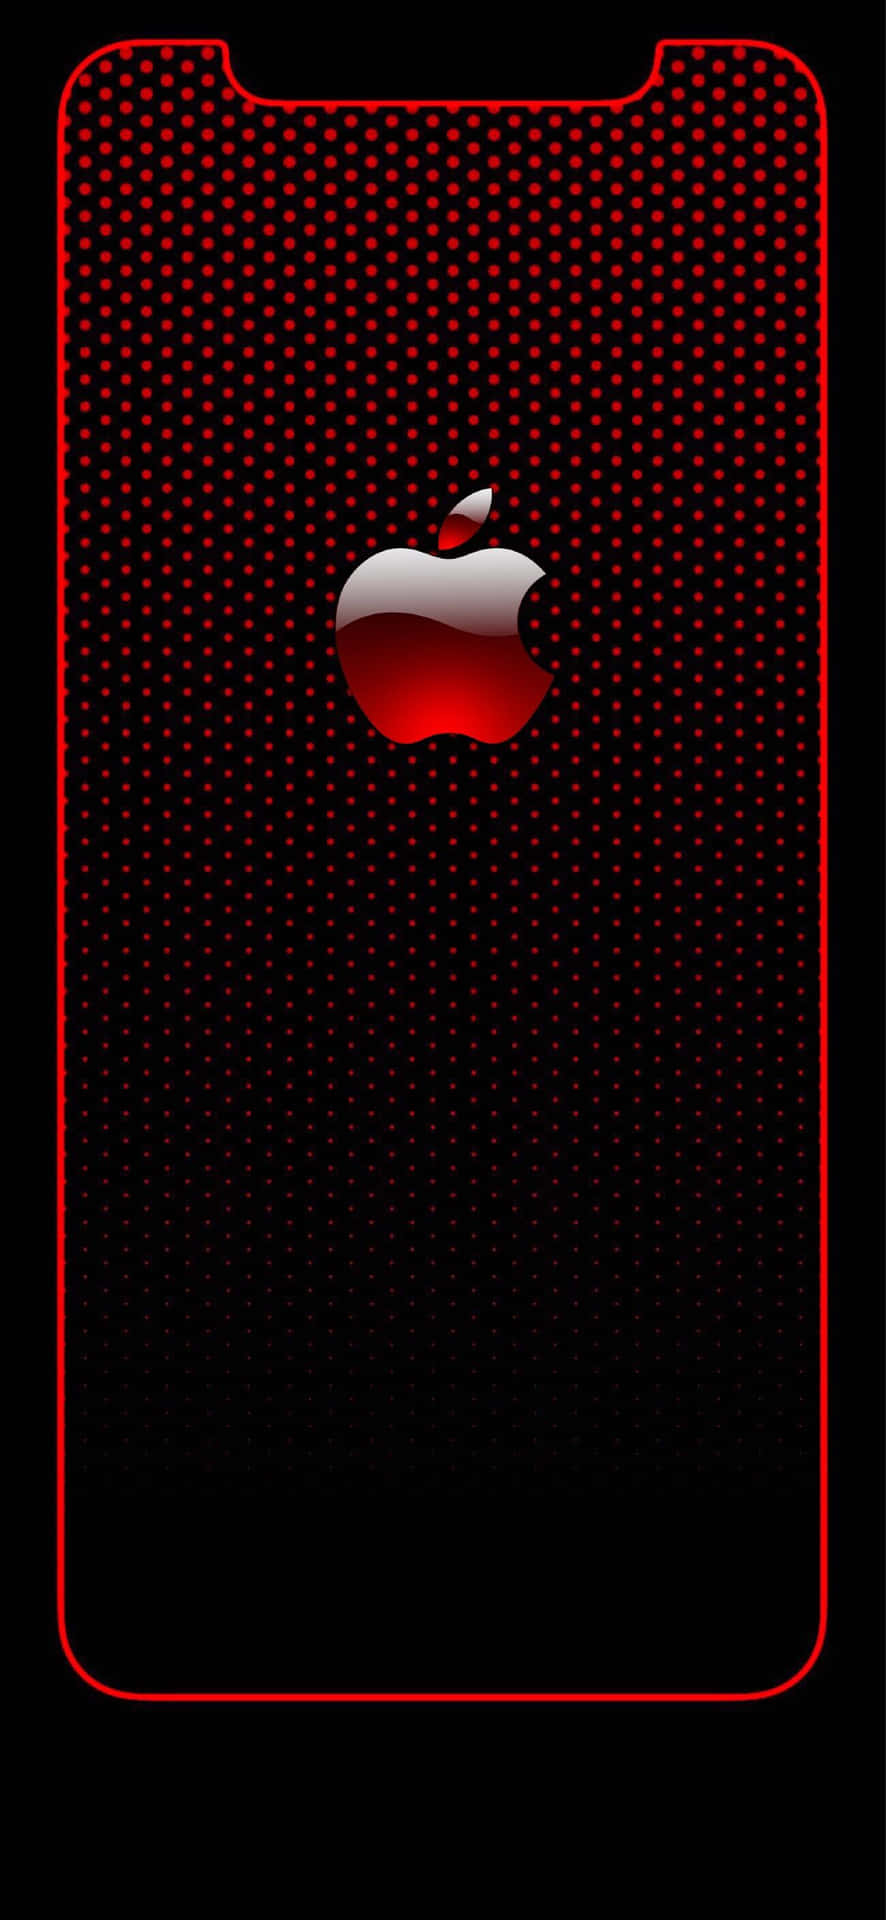 Apple iPhone X Logo Tapet: Oplev Apple iPhone X logoet i en farverig grafisk tapet. Wallpaper